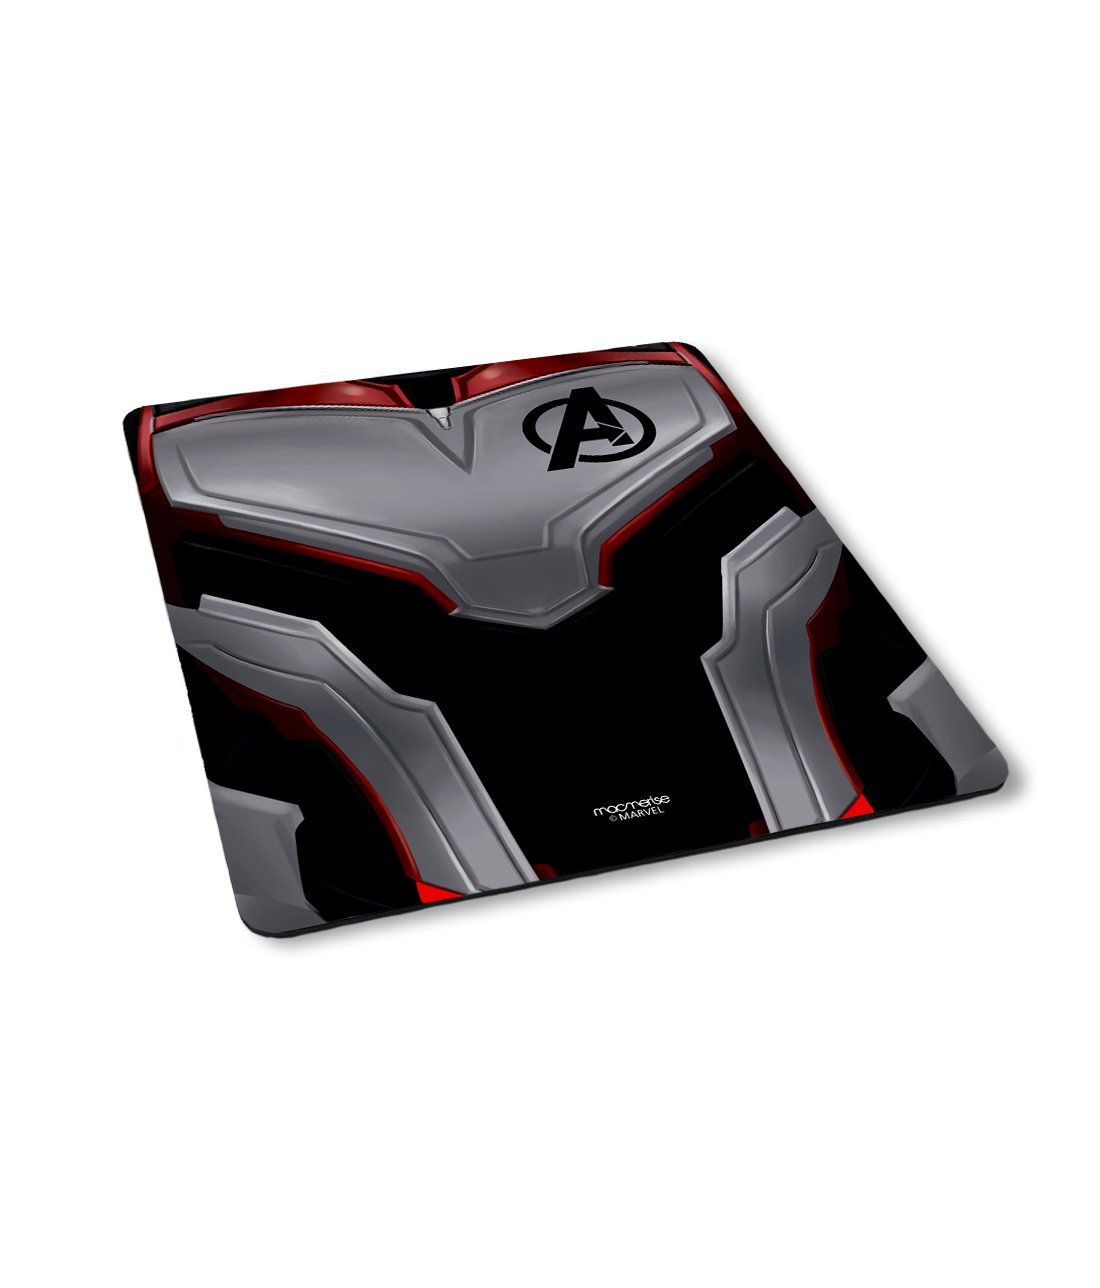 Avengers Endgame Suit - Macmerise Mouse Pad